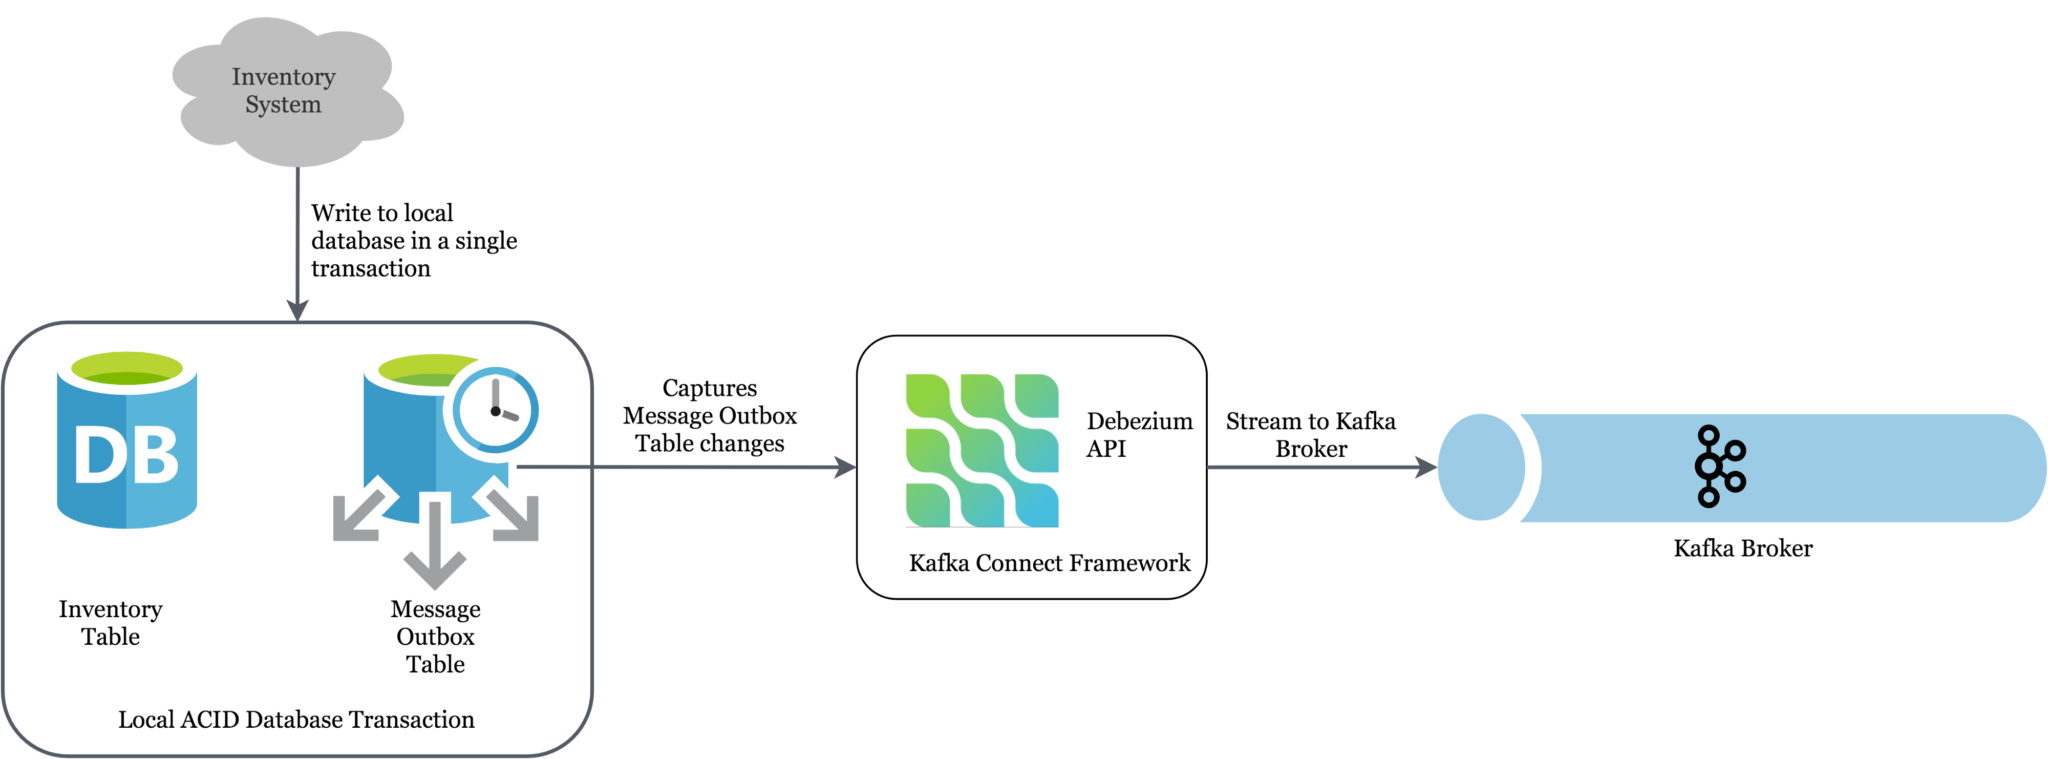 Streaming of database changes to Kafka using Debezium